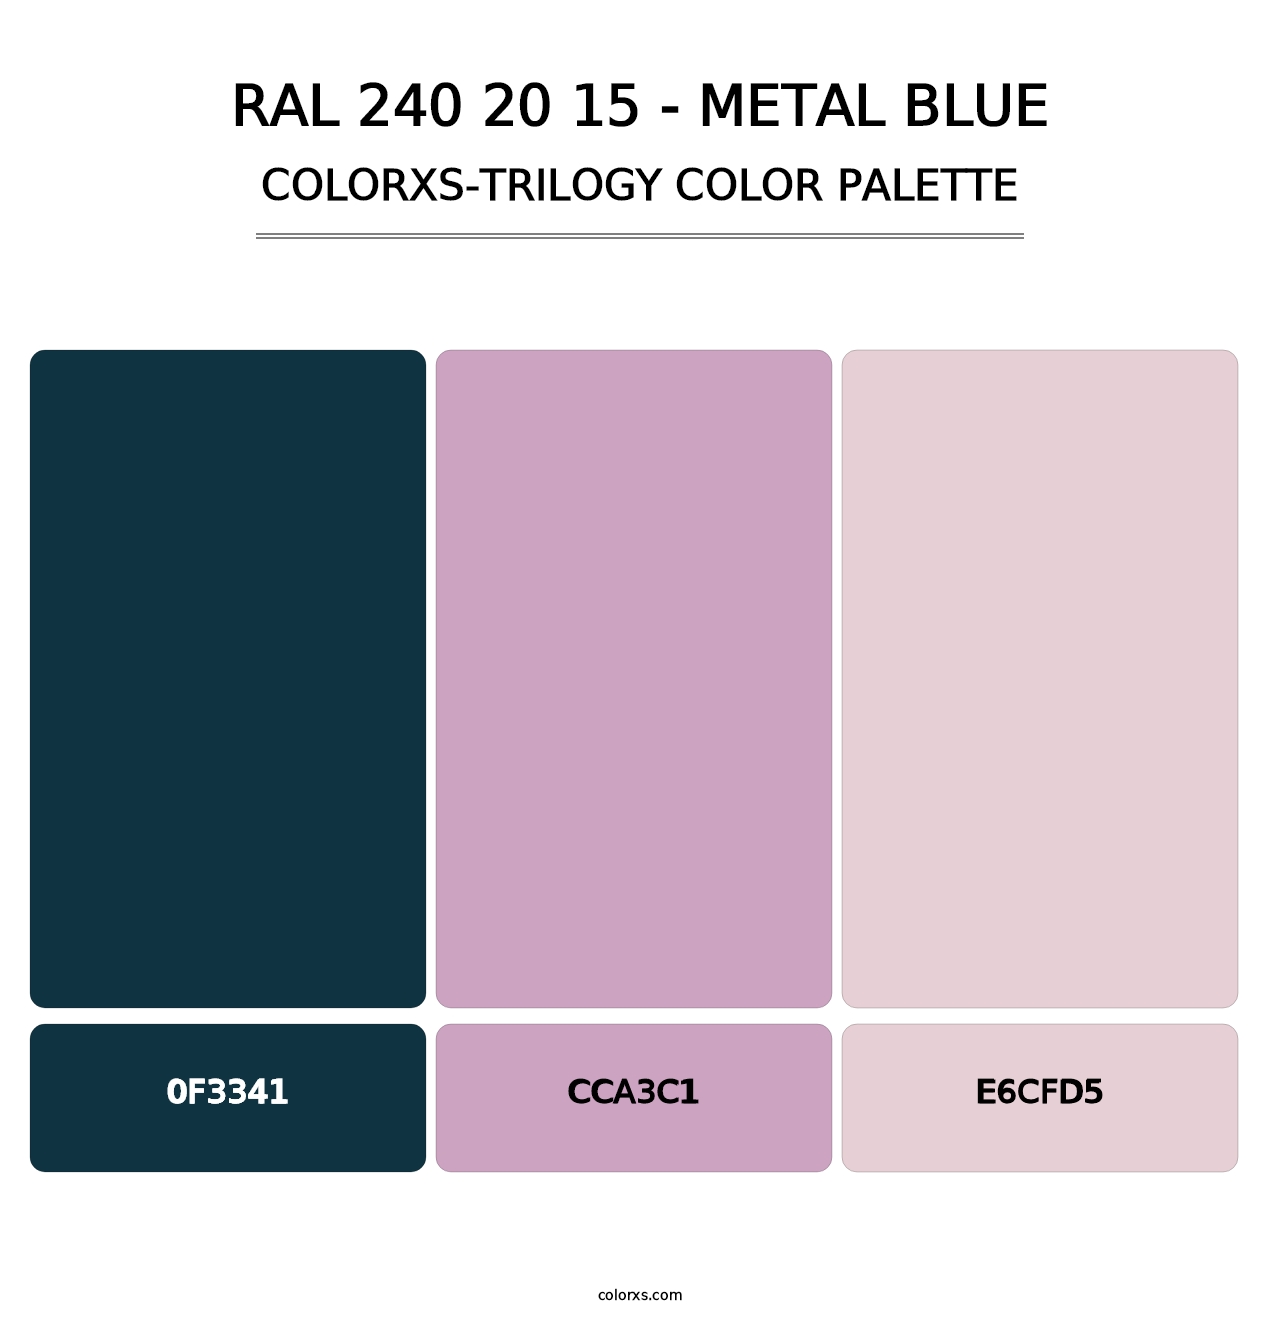 RAL 240 20 15 - Metal Blue - Colorxs Trilogy Palette